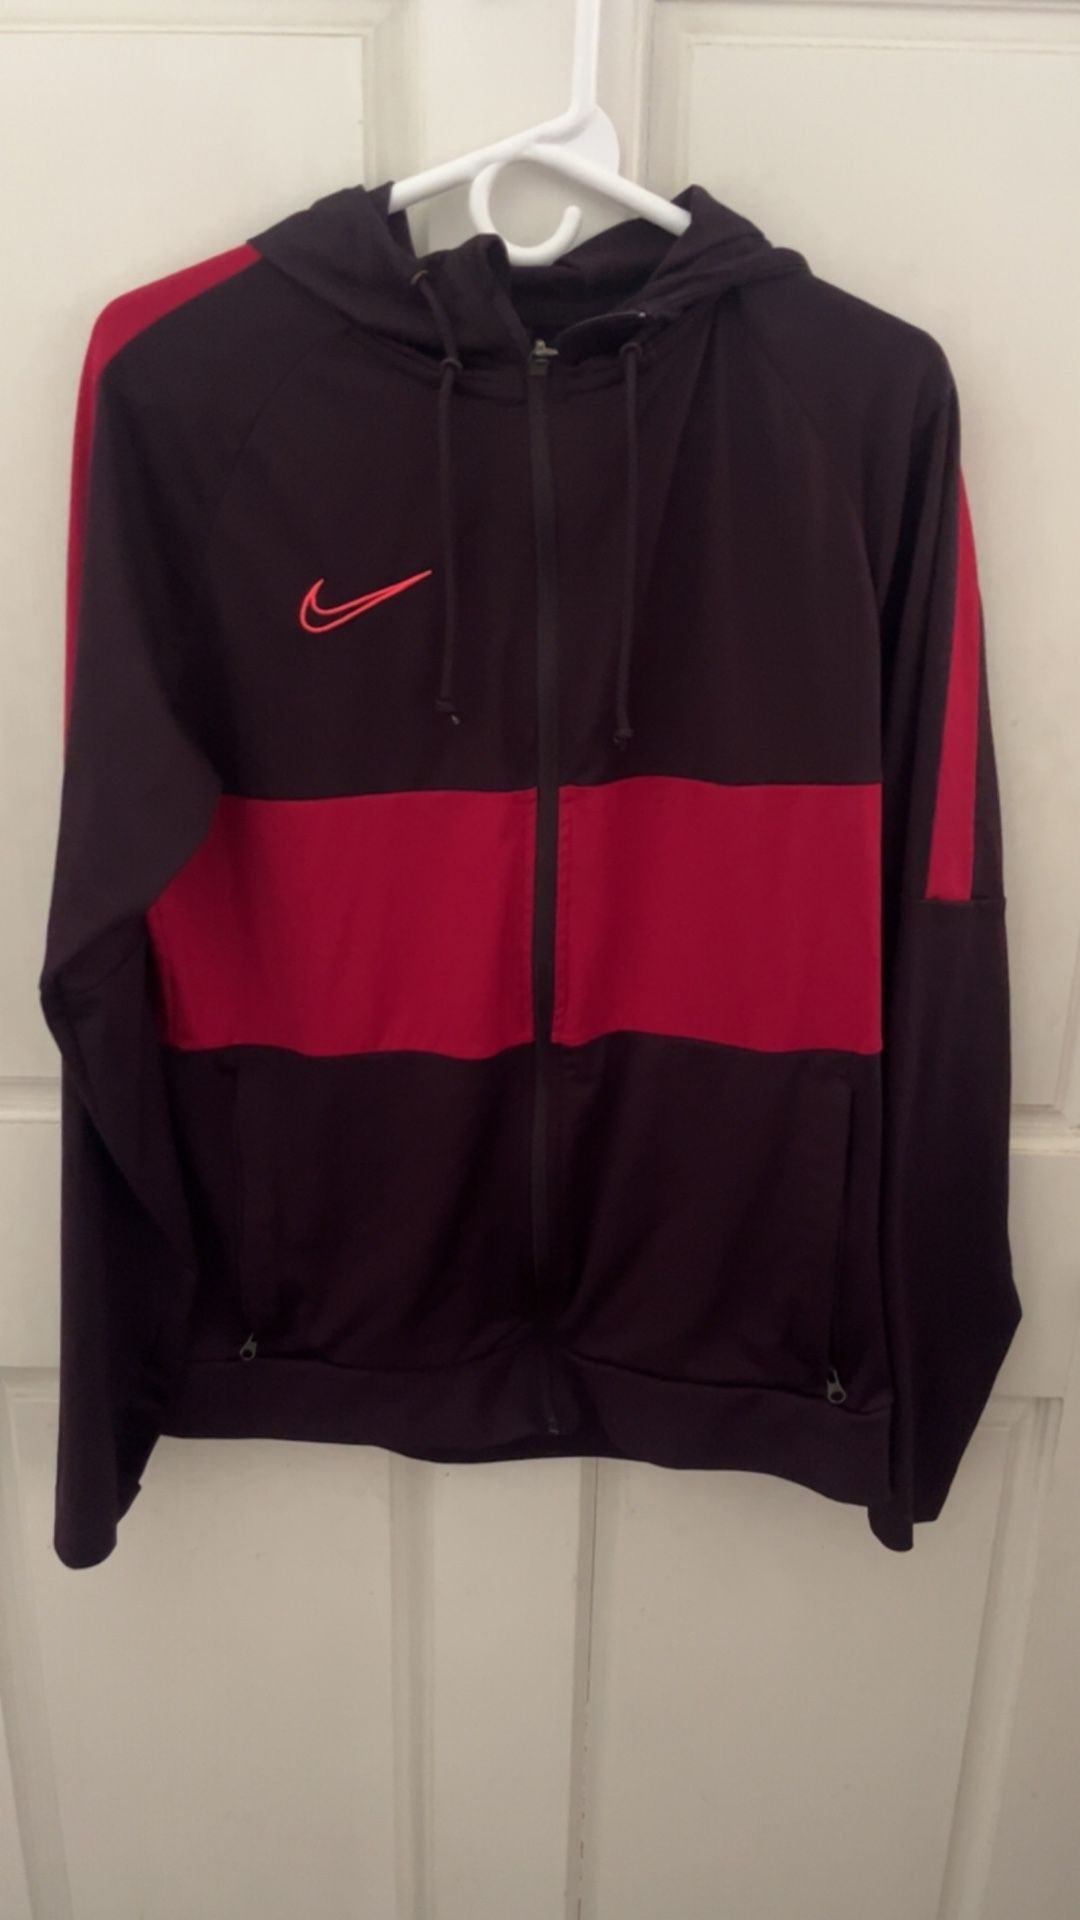 Nike Women’s Dri-Fit Jacket/Sweater